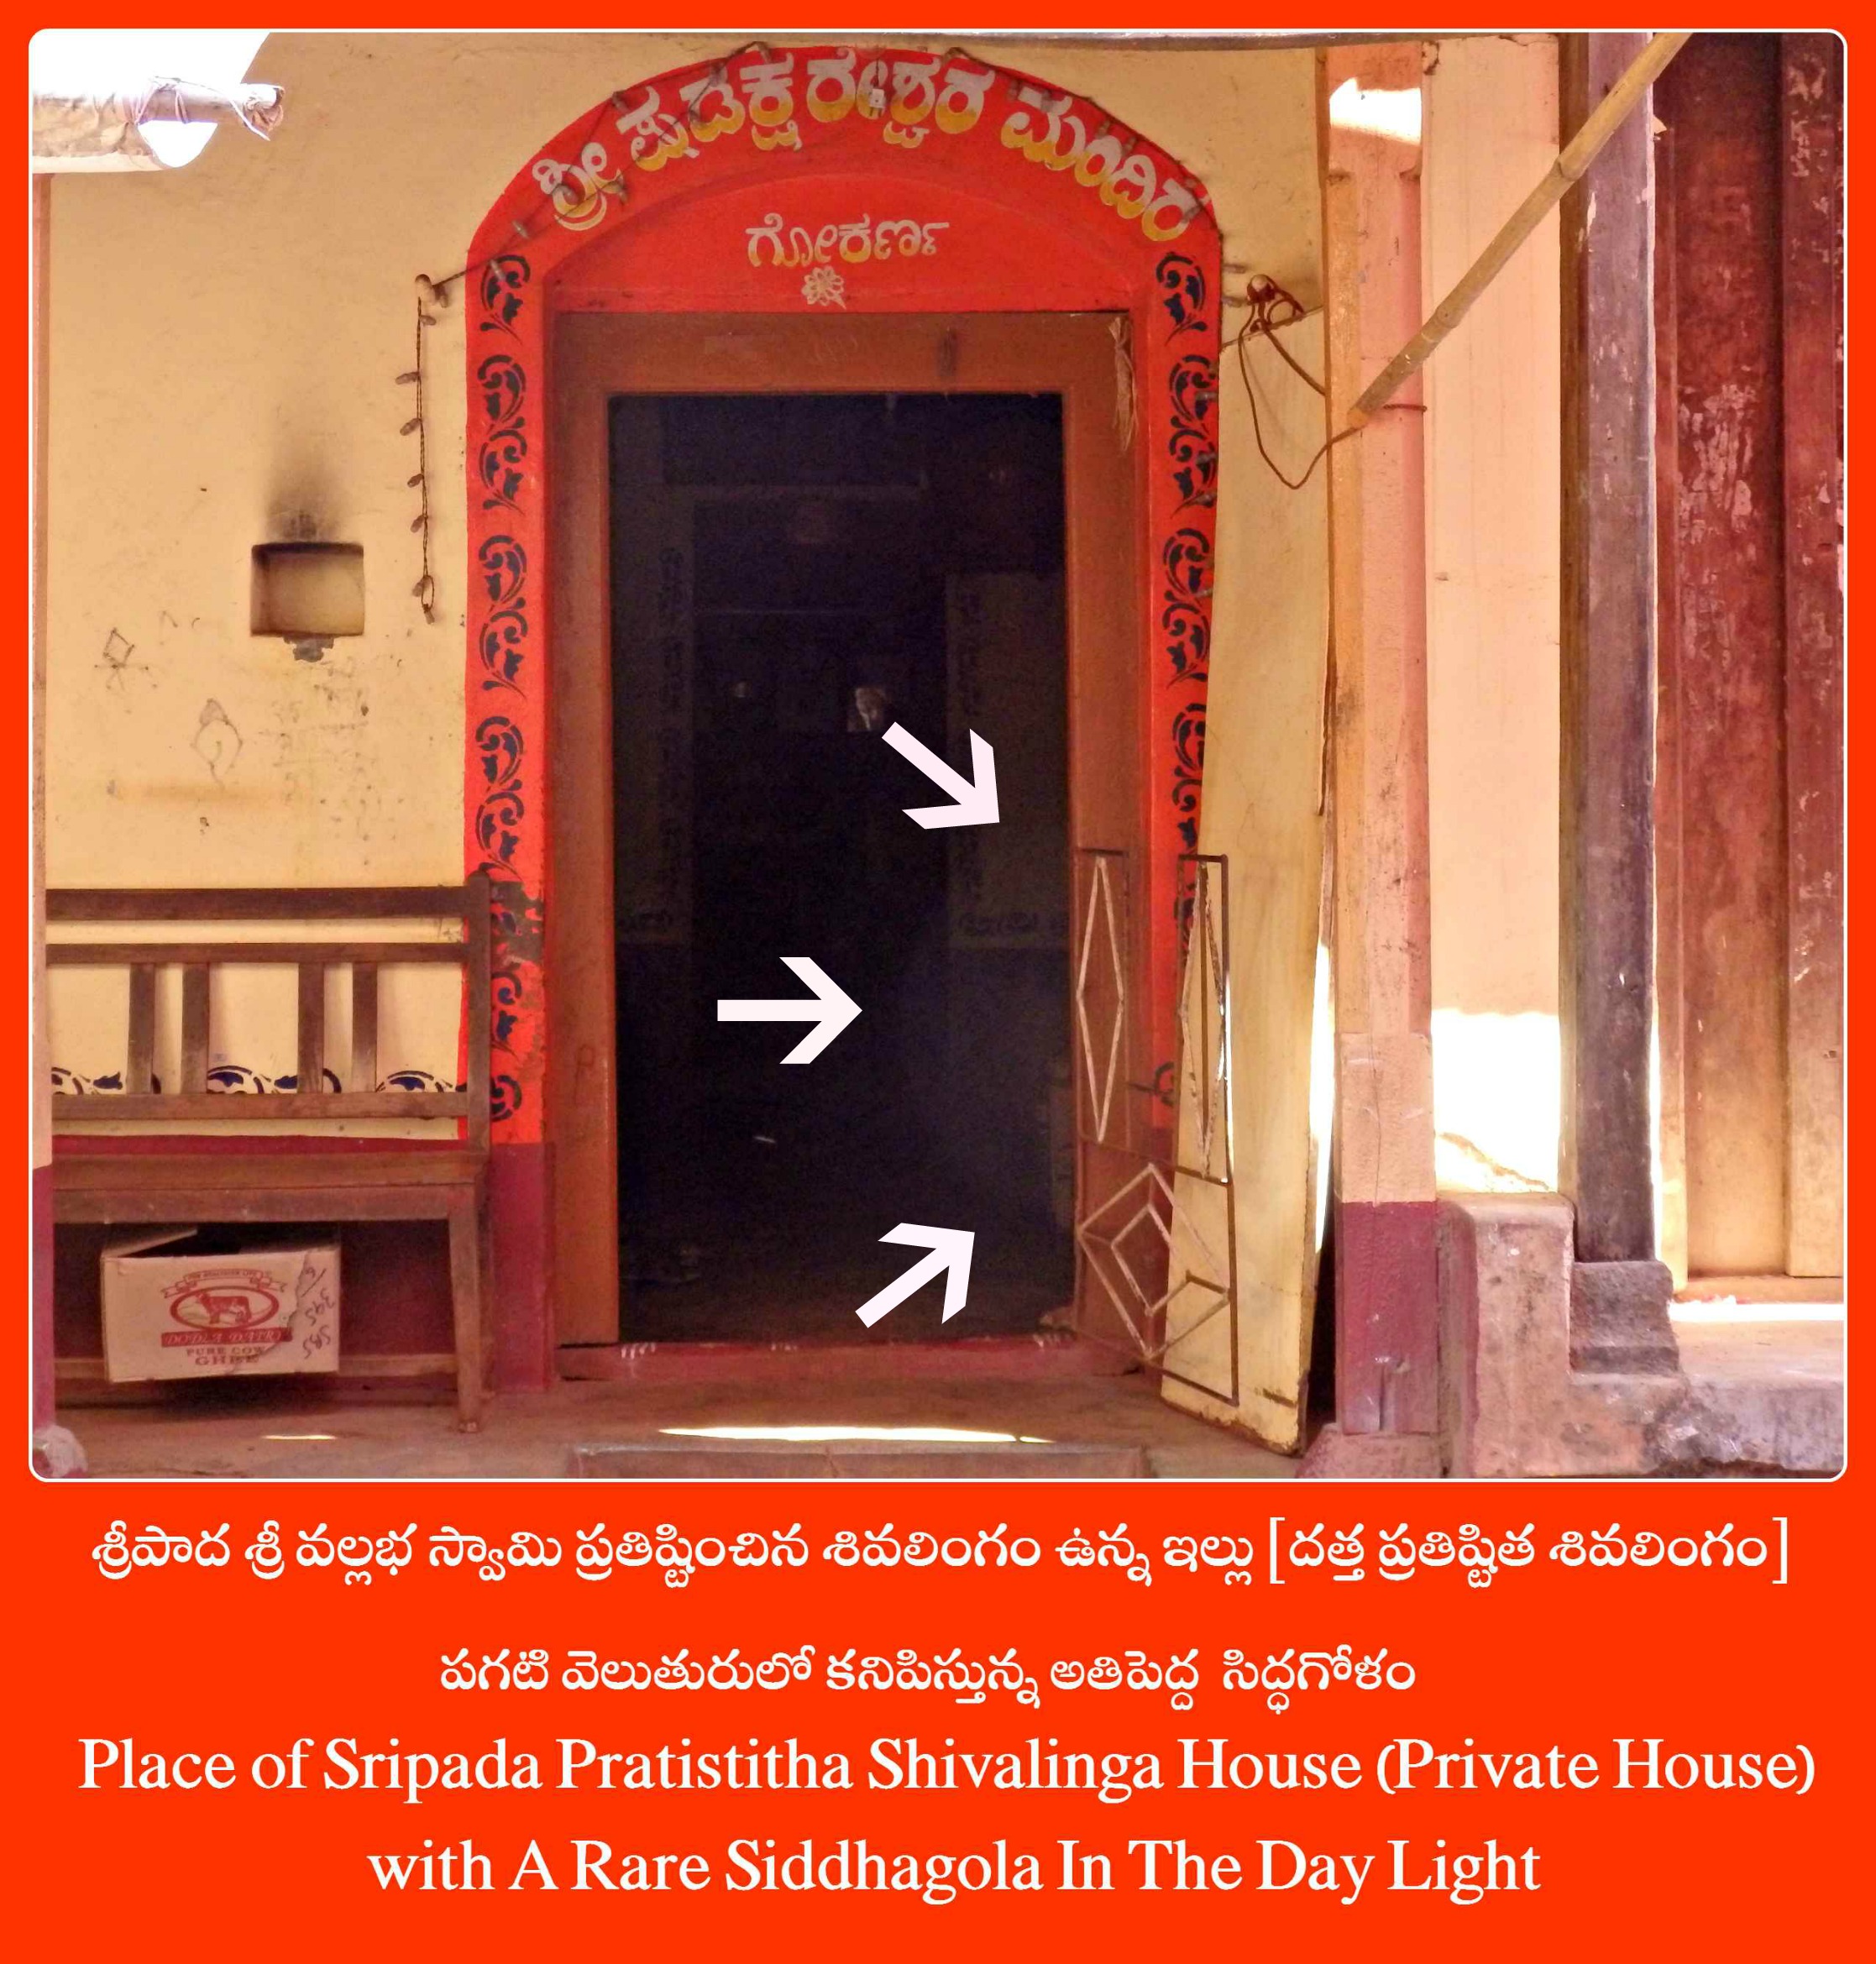 Sripada Vallabha Pratistitha Datta Shivlinga Temple with A Rare Siddhagola In The Day Light - Gokarna